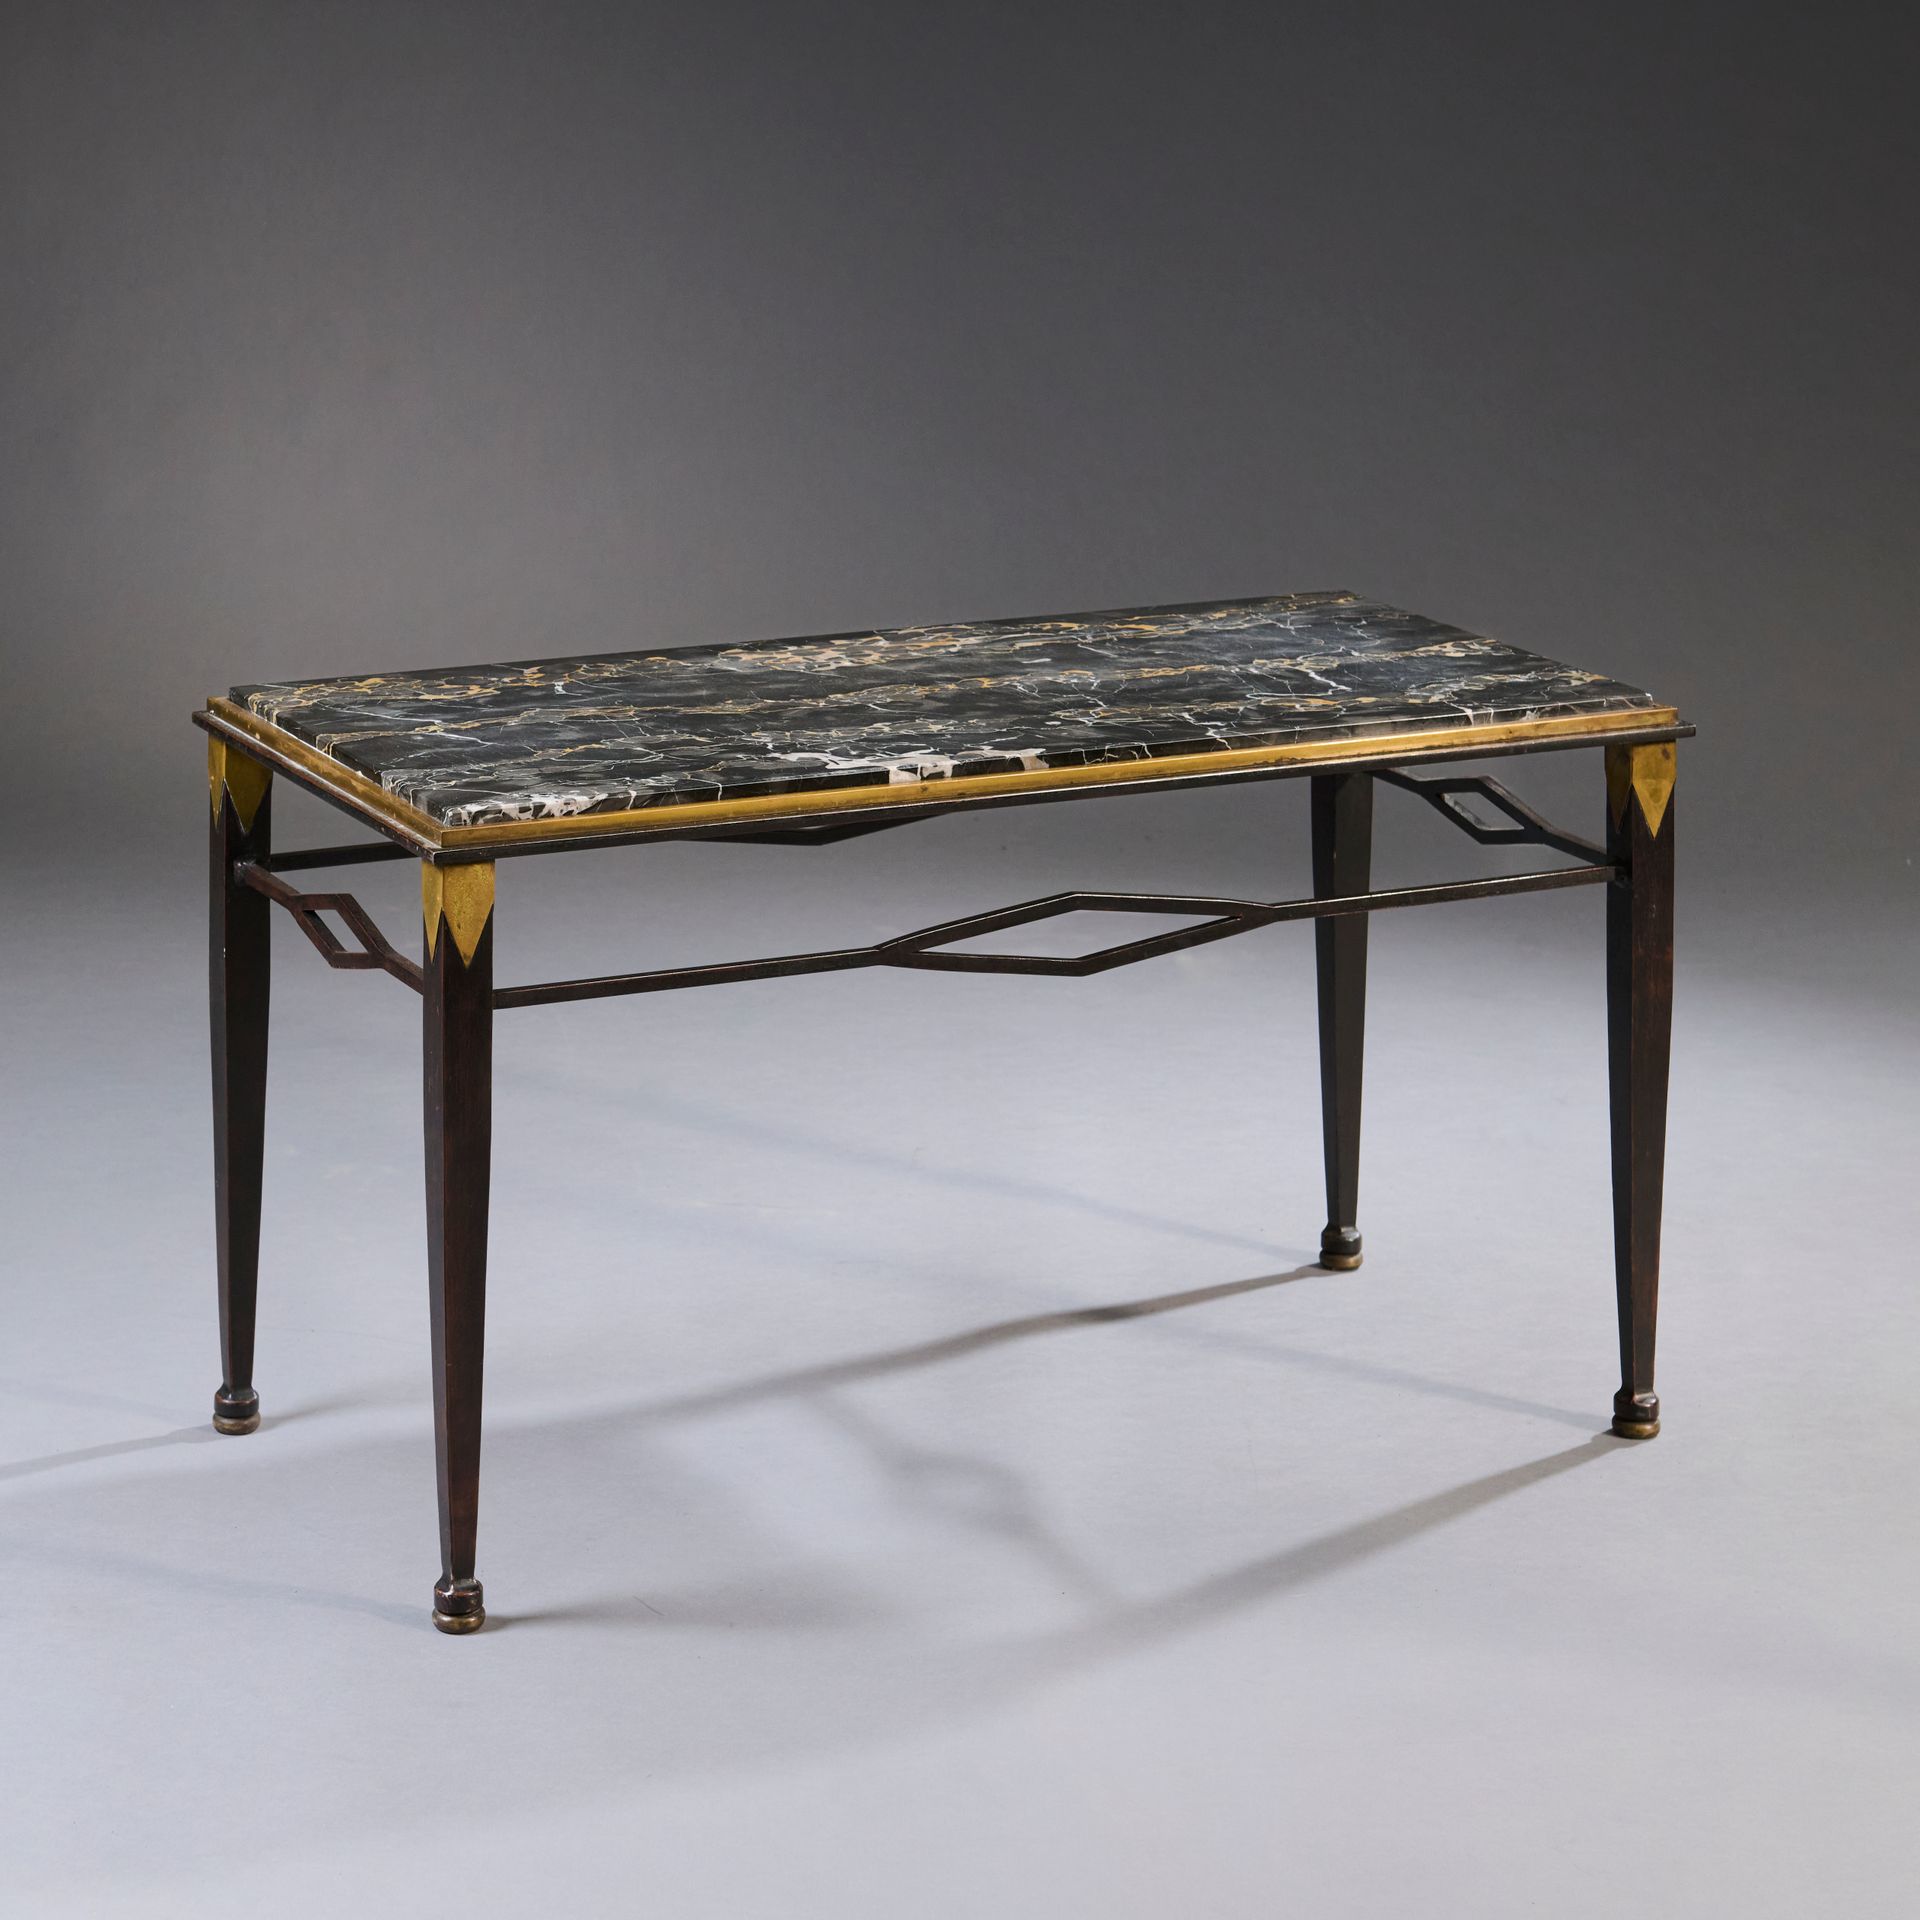 Null 长方形咖啡桌或茶几，桌腿为古铜色，桌腿顶端有三角形黄铜元素，并以菱形连接。桌面为大理石。

约制作于 1940 年。
高度：50 厘米50 厘米 - &hellip;